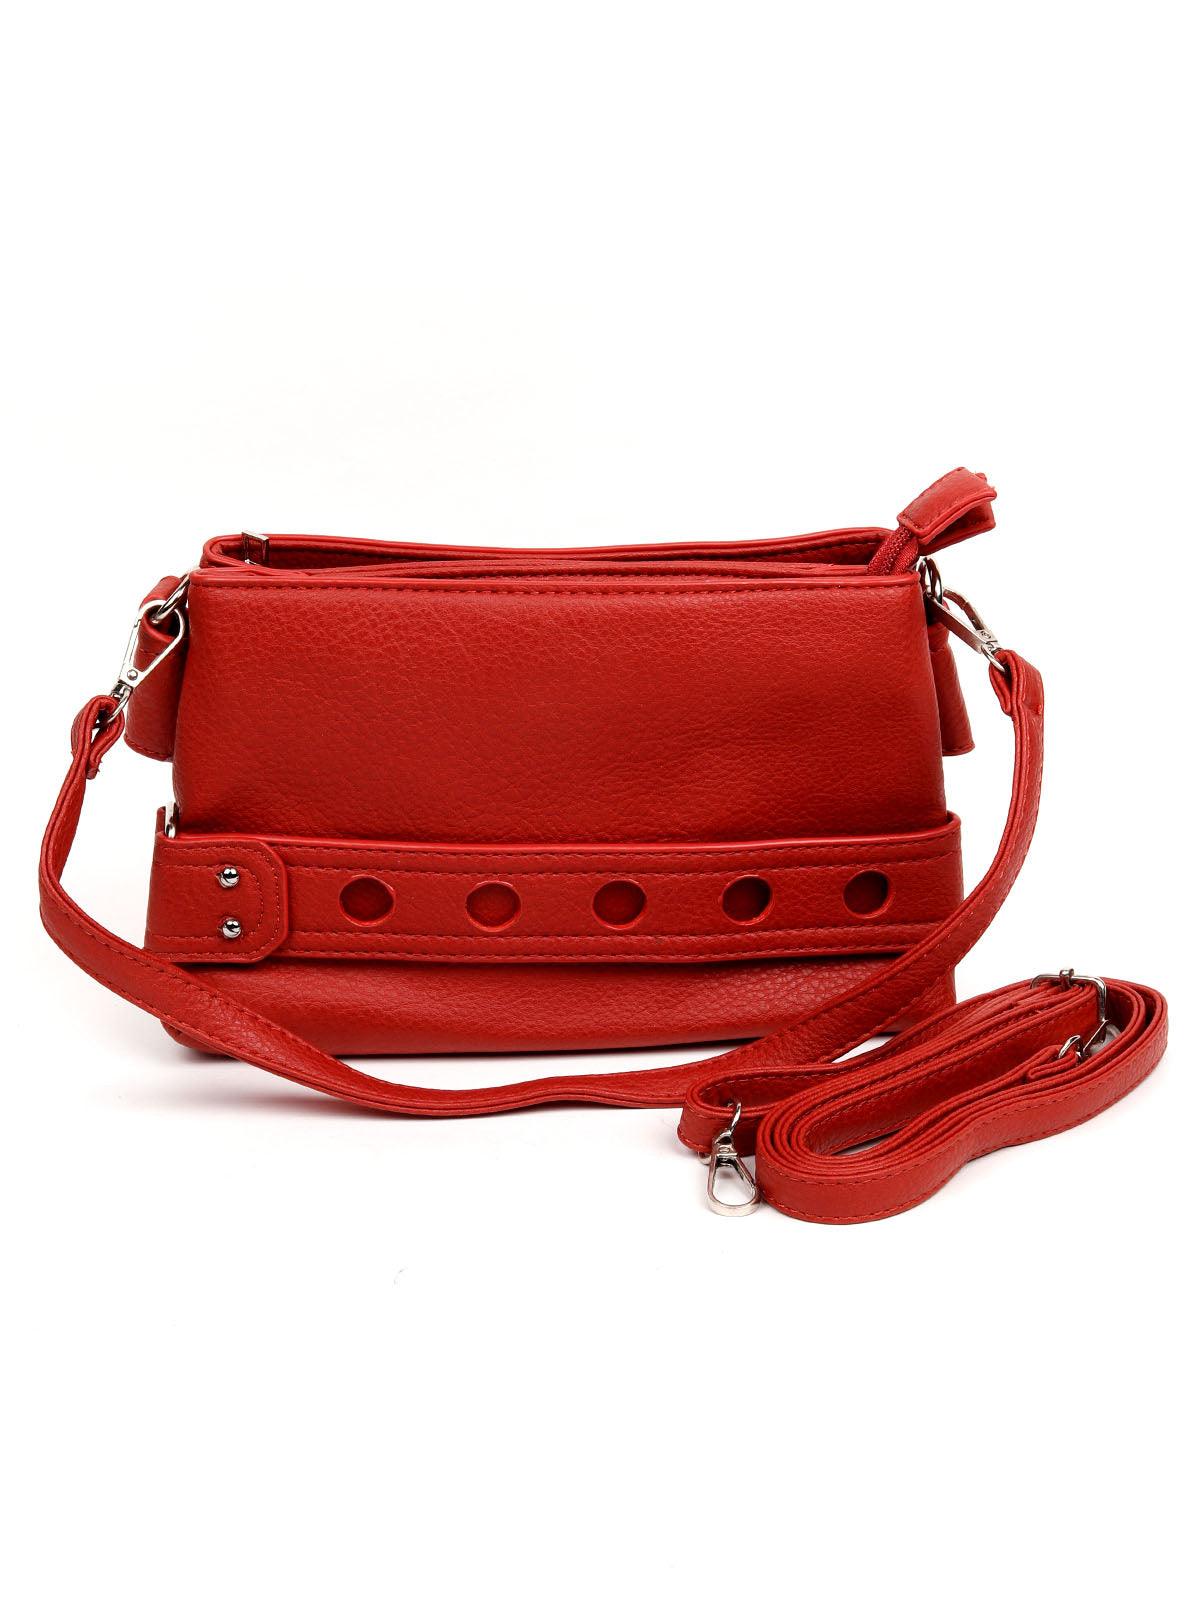 Cherry red sling bag for women - Odette